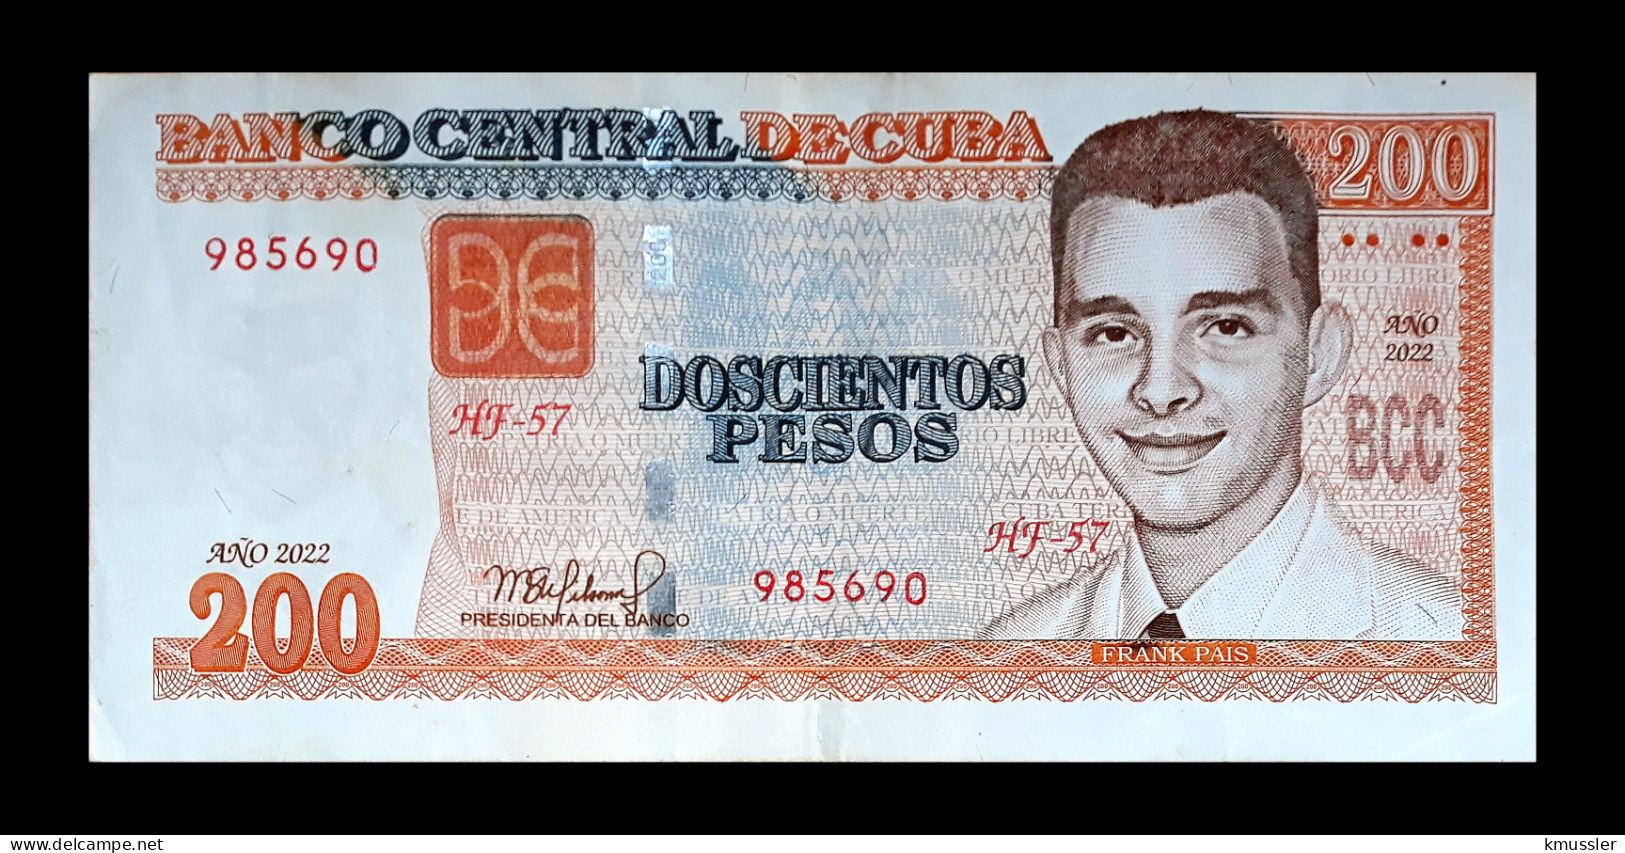 # # # Banknote Kuba (Cuba) 200 Pesos 2020 # # # - Cuba